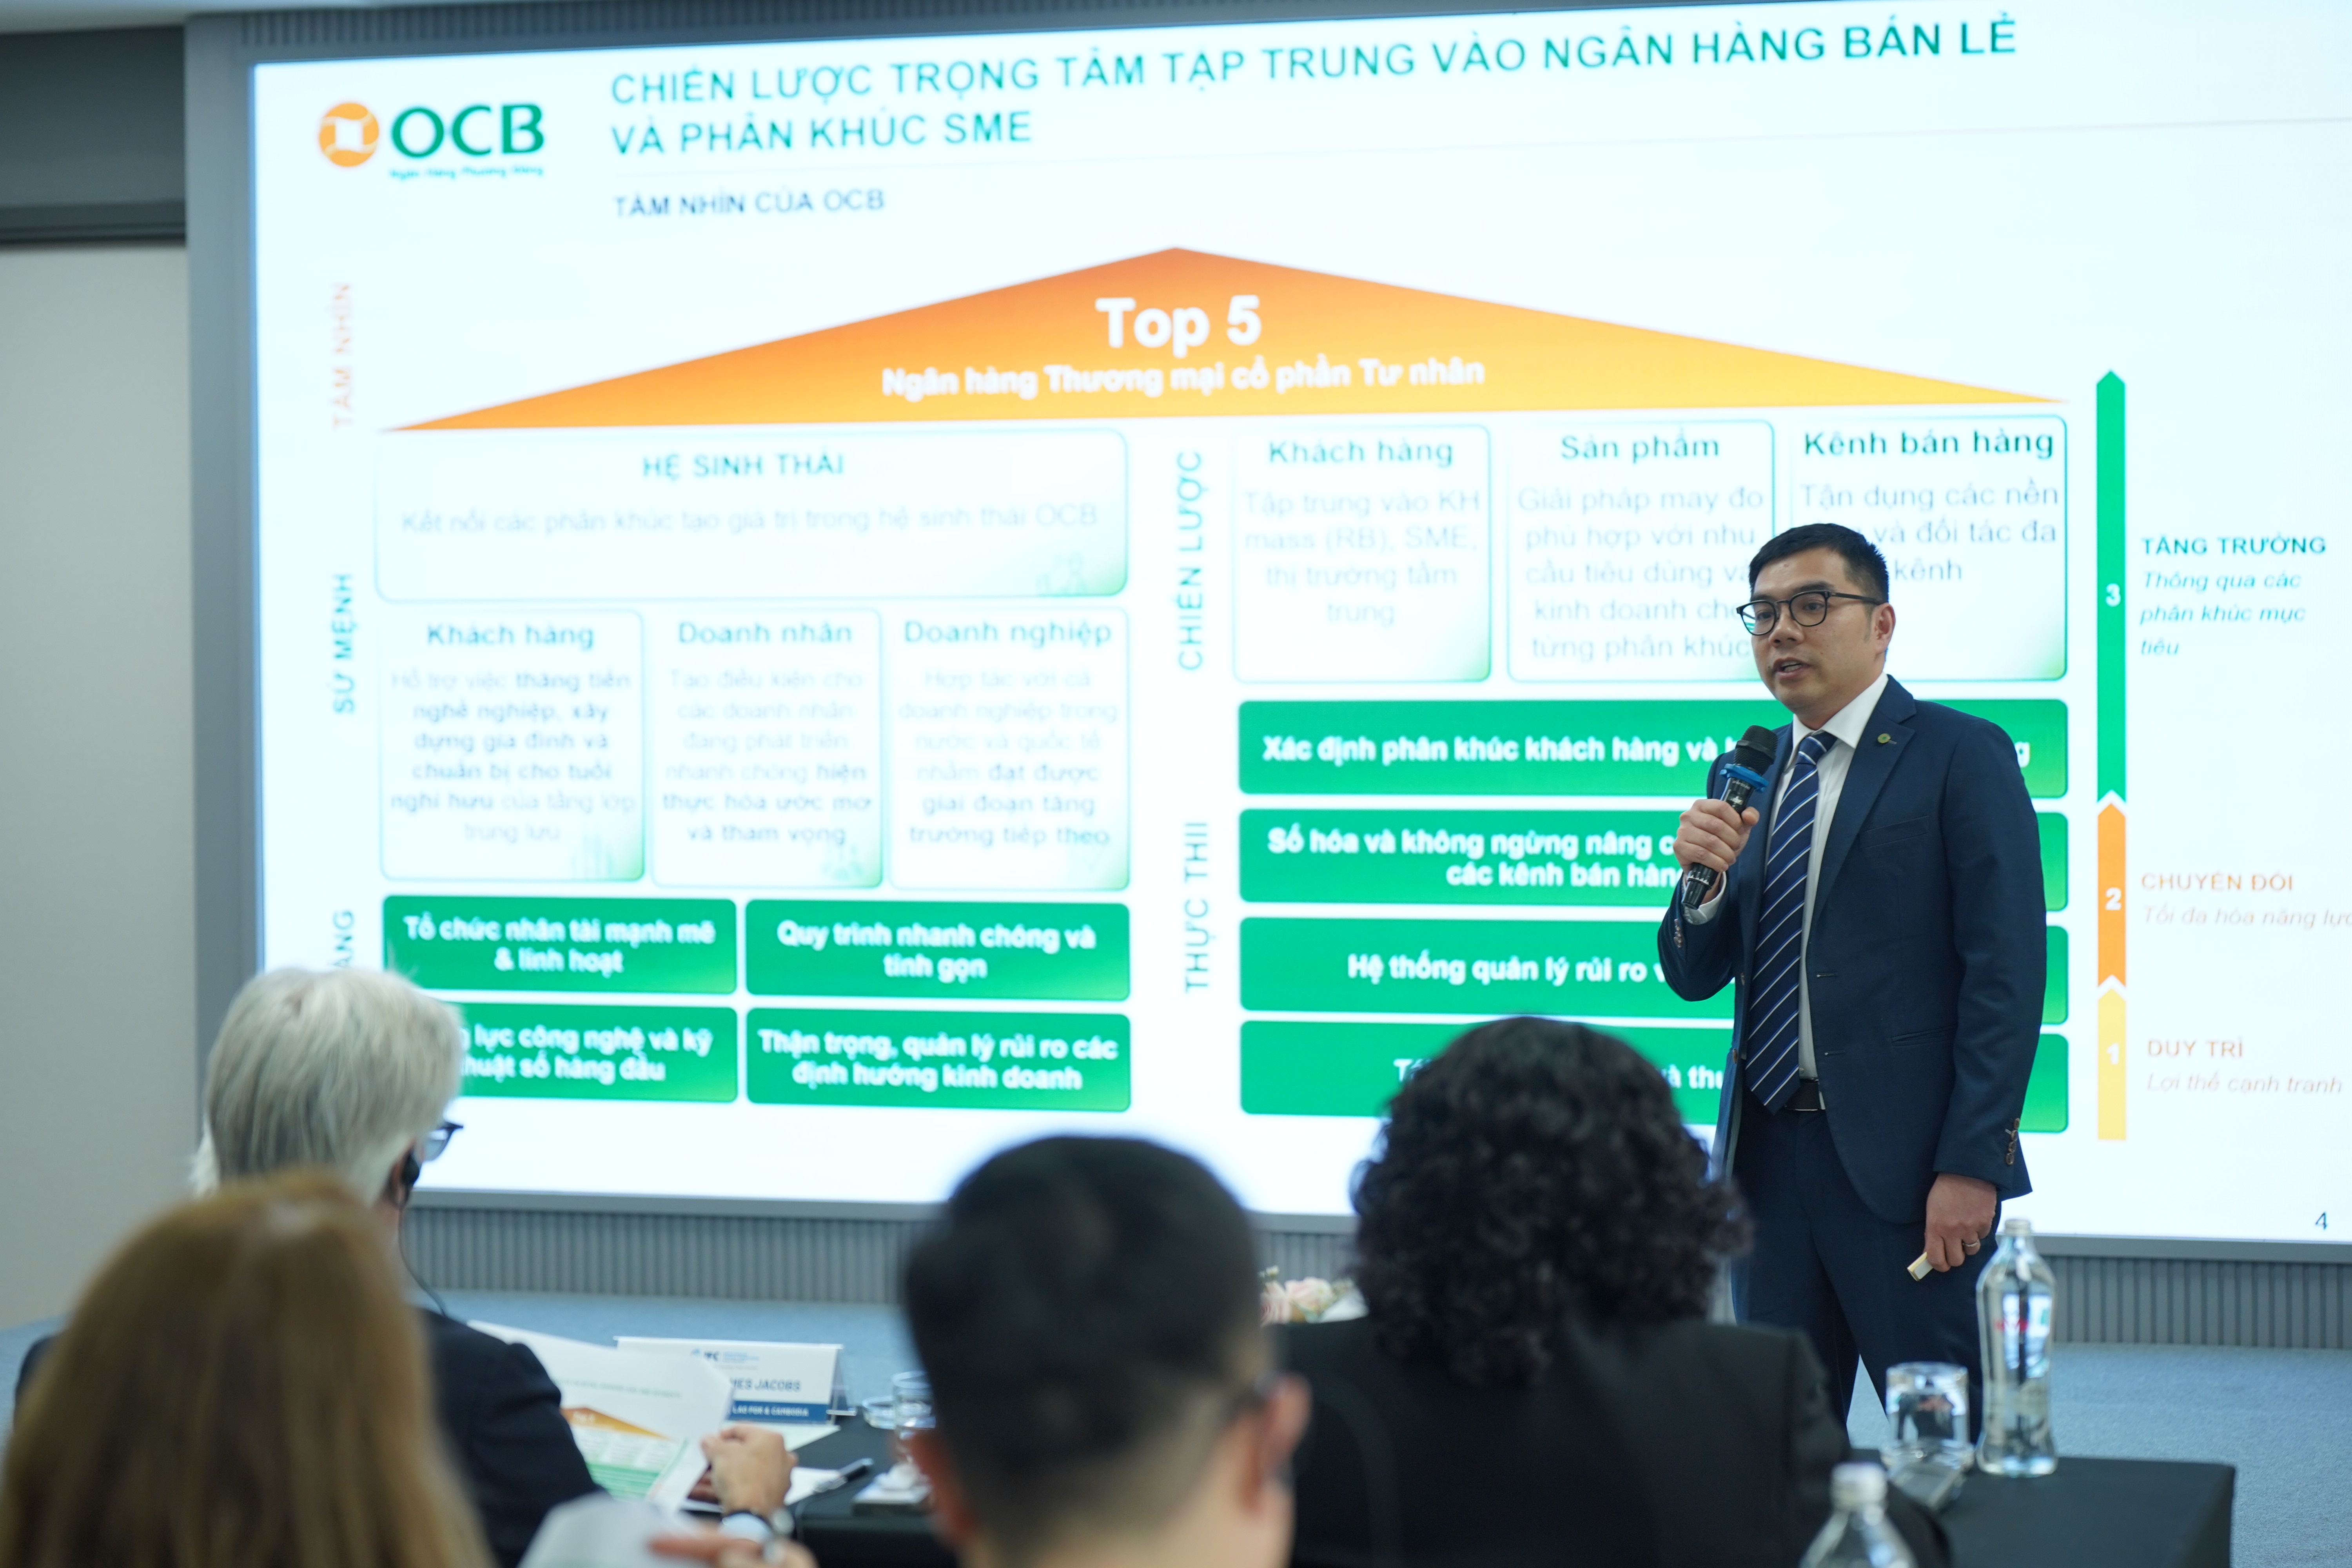 Đại diện OCB chia sẻ chiến lược phát triển bền vững hướng đến mục tiêu trở thành ngân hàng xanh tiên phong tại Việt Nam